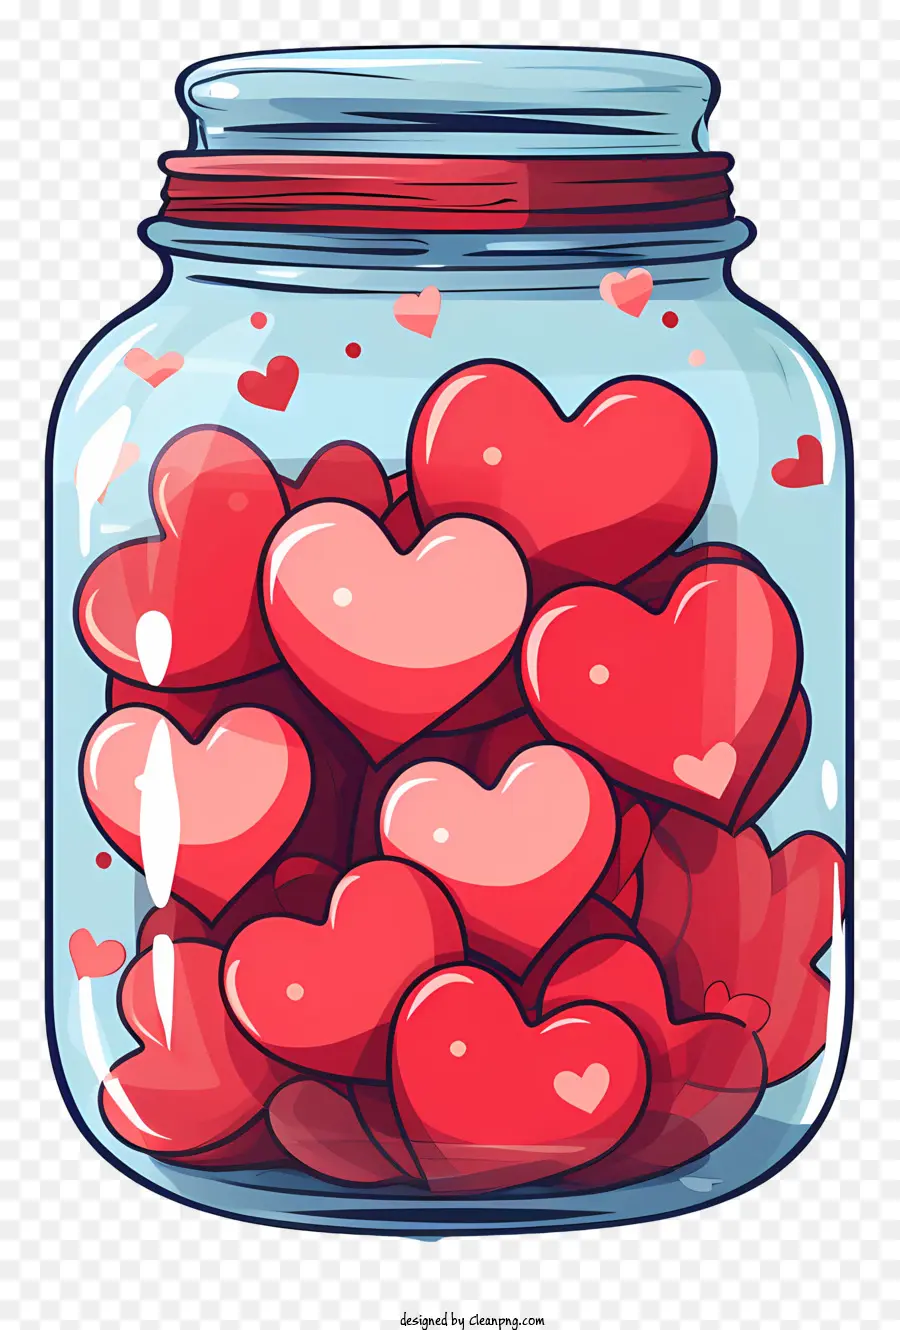 Mason Jar Glass Heart Mason Jar Red Hearts Jar trong suốt - Vật hình trái tim trong bình Mason với trái tim màu đỏ nổi